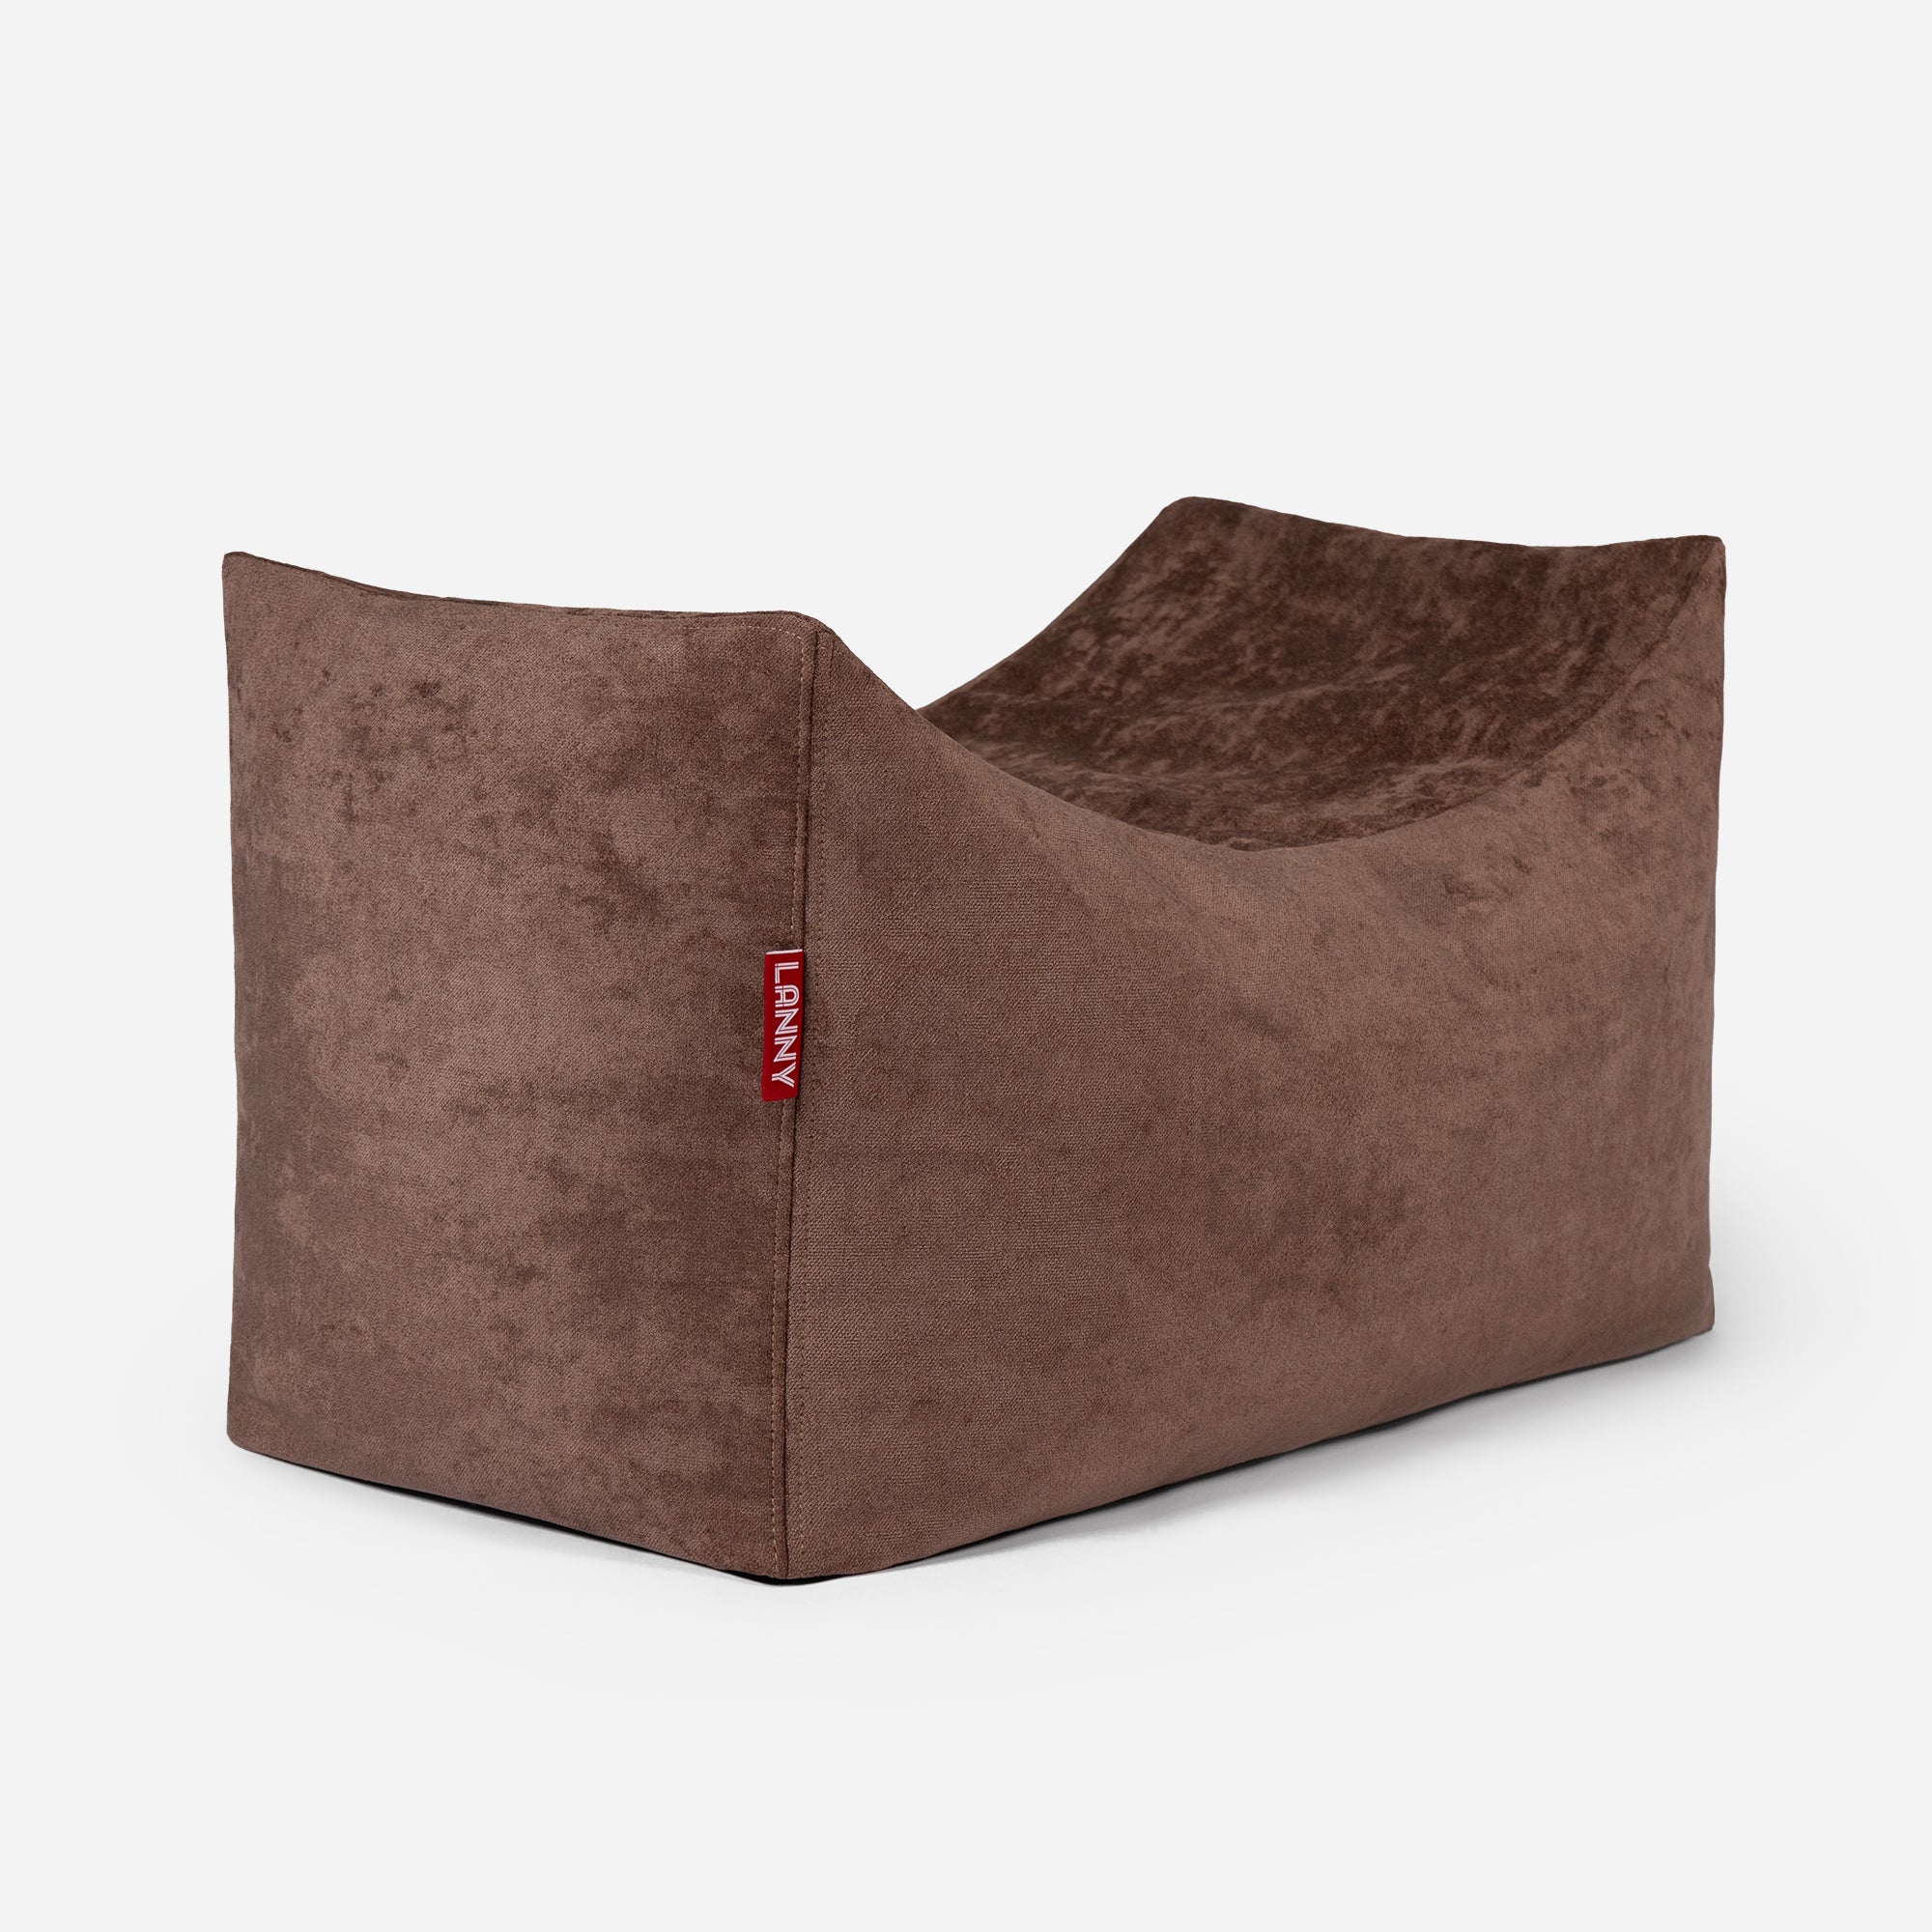 Quadro Aldo Brown Bean bag Chair